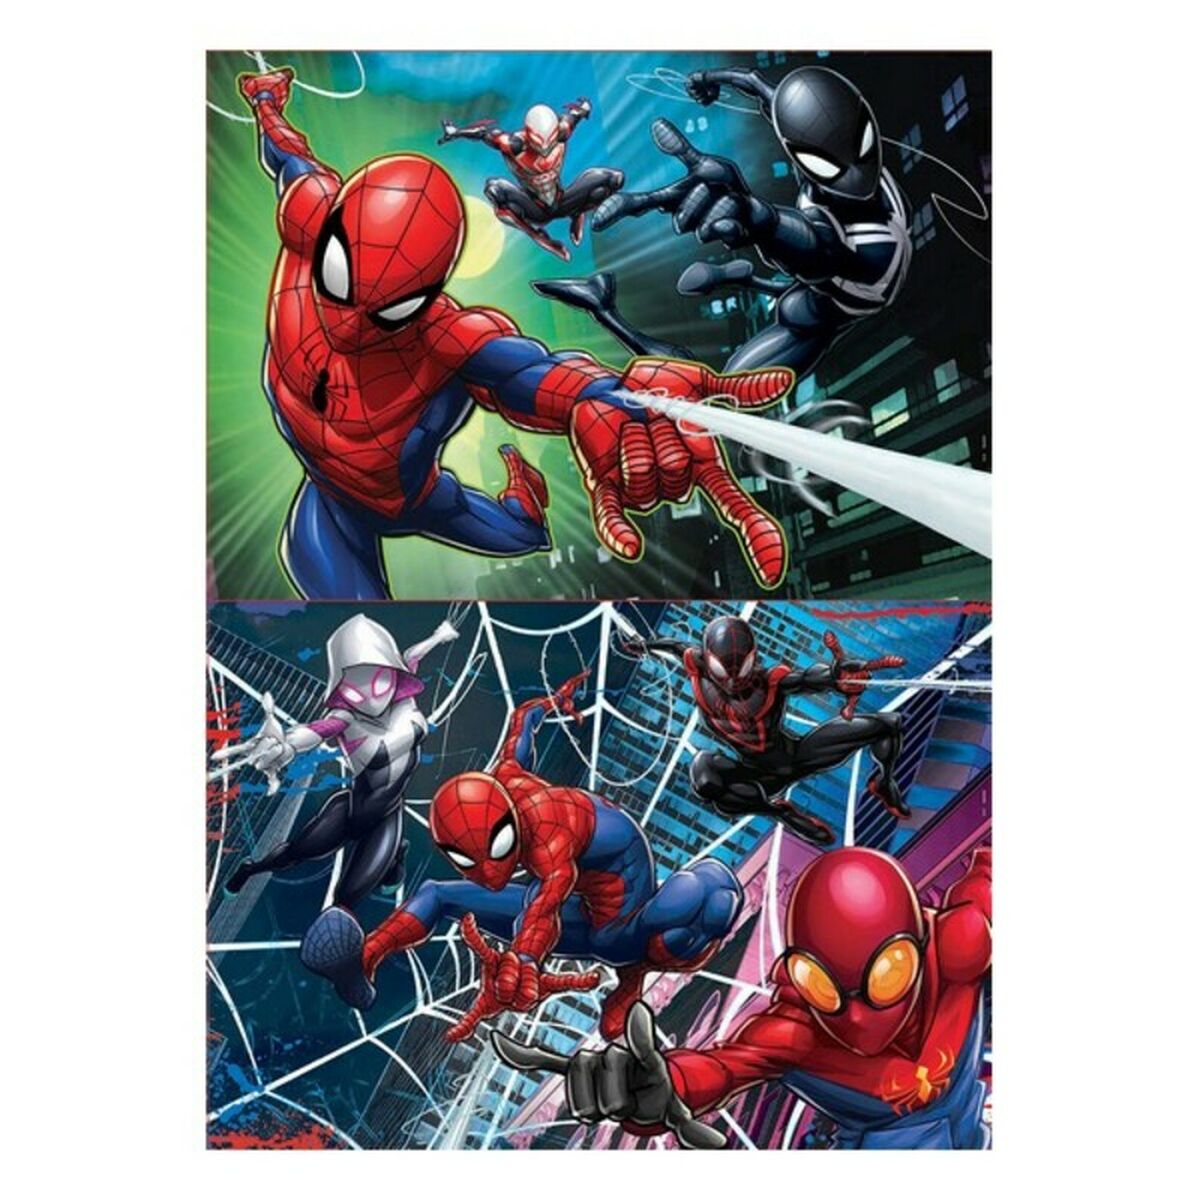 Set mit 2 Puzzeln   Spider-Man Hero         100 Stücke 40 x 28 cm  